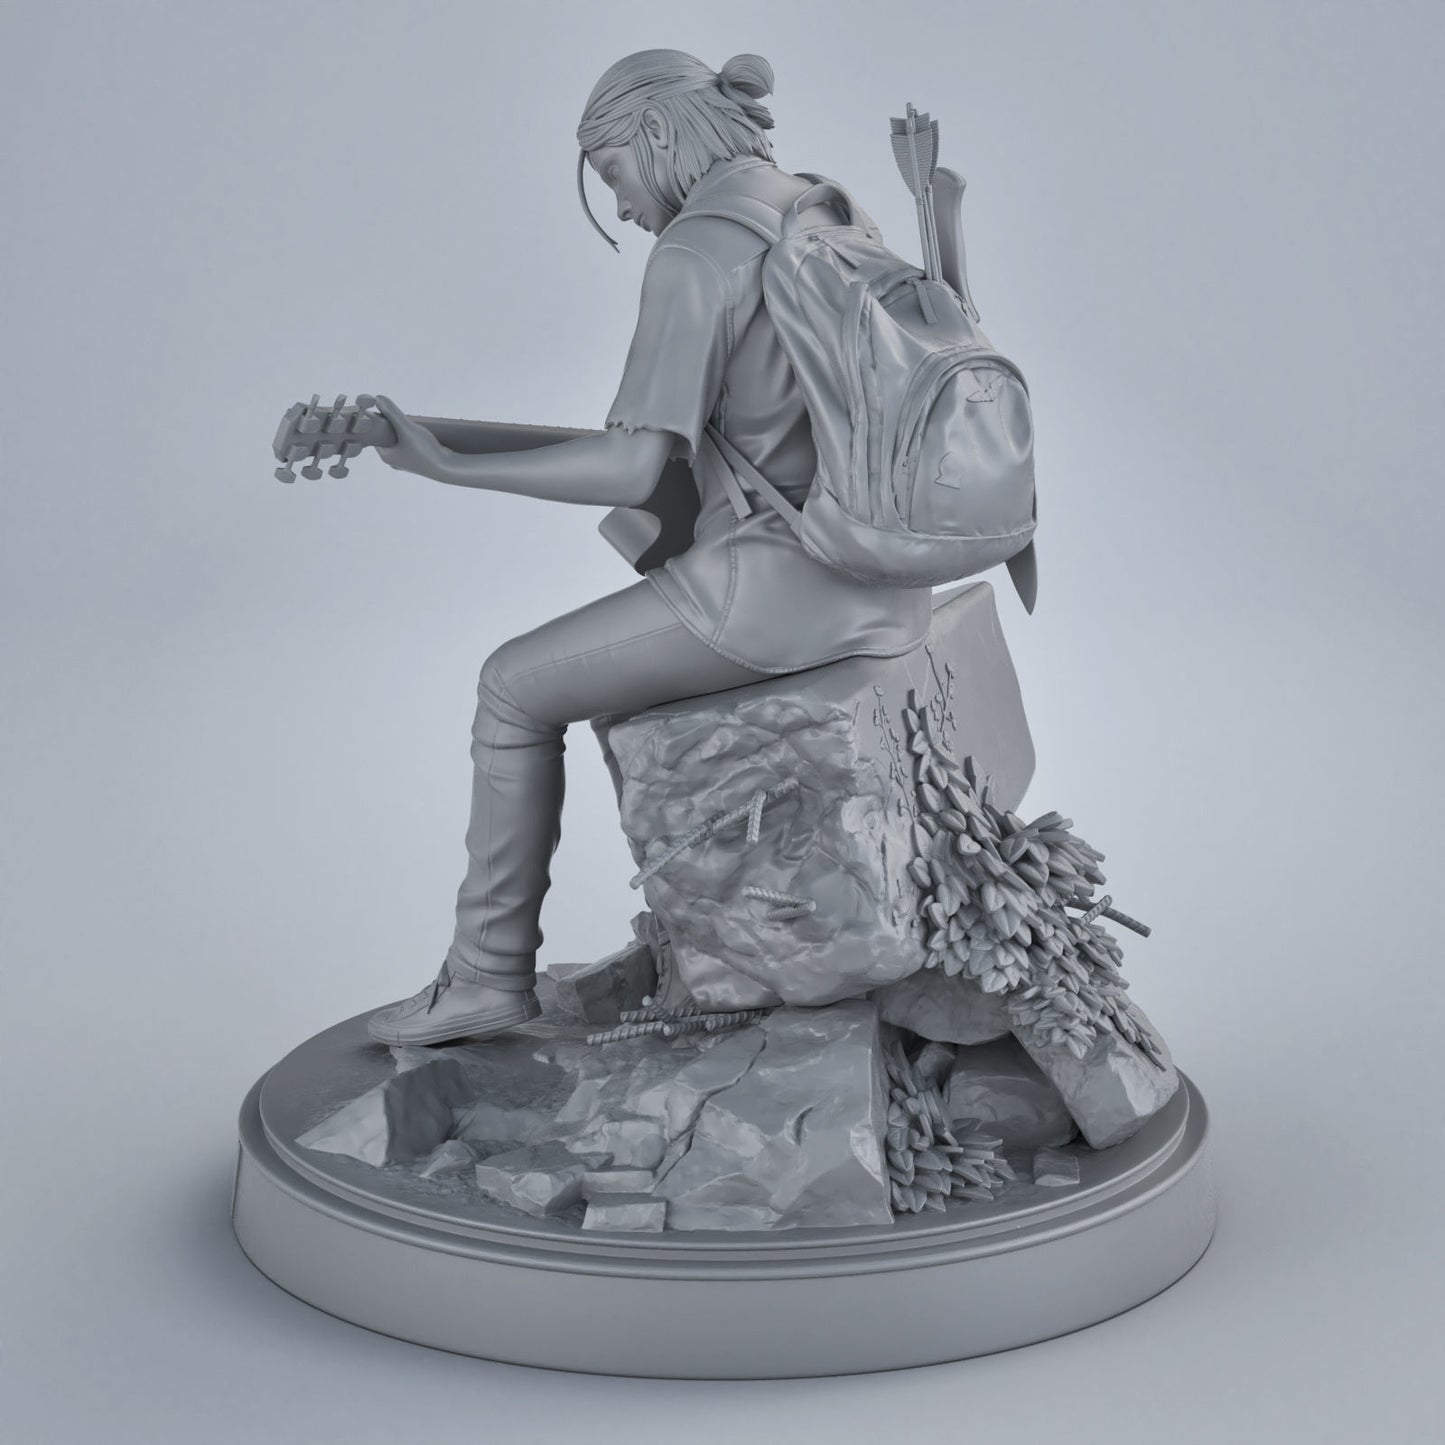 Ellie The Last of Us Part 2 3D model 3D printable